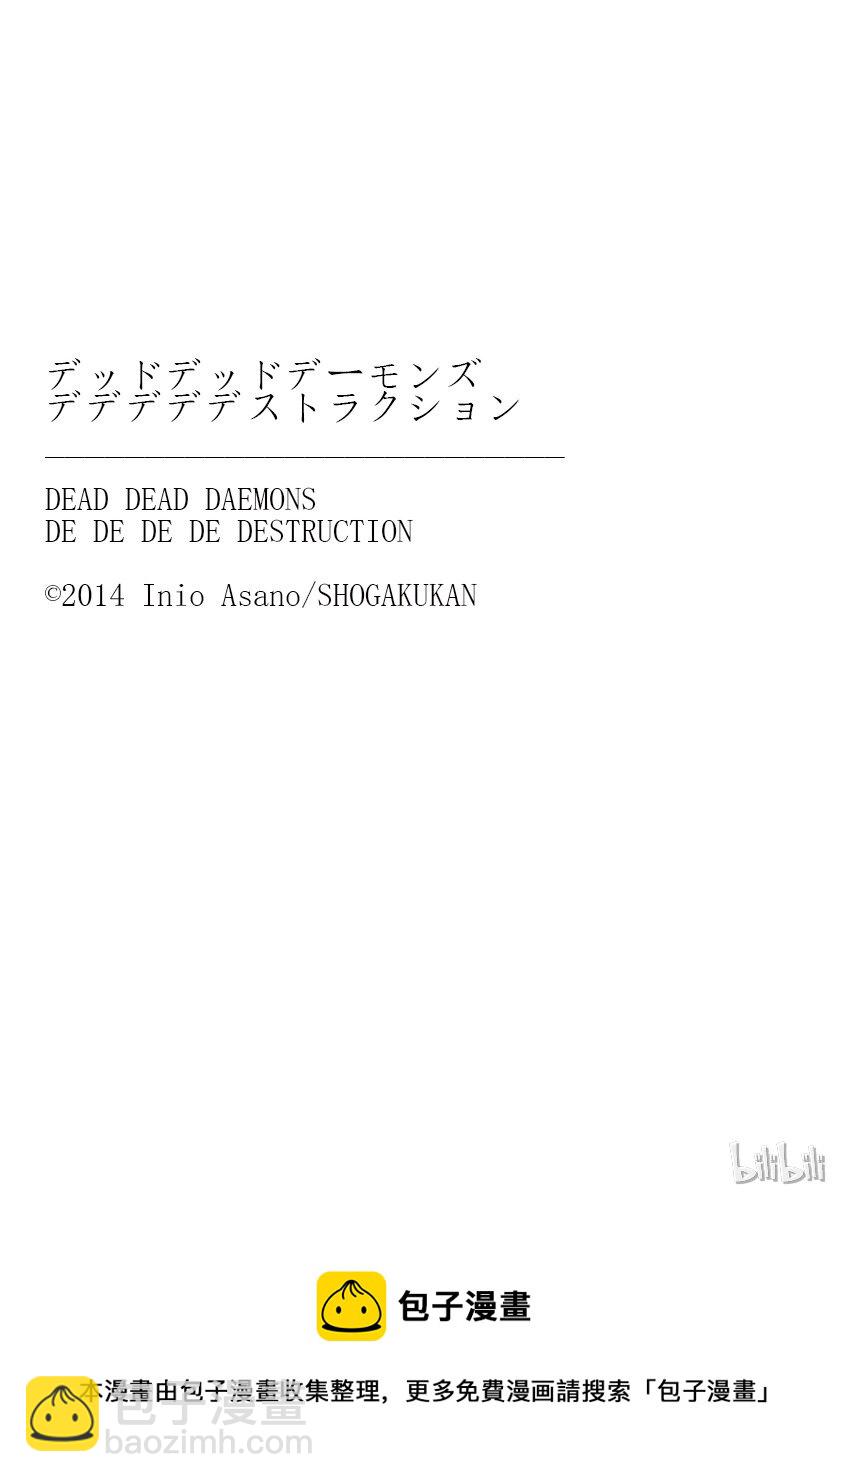 惡魔的破壞 DEAD DEAD DEMON'S DEDEDEDE DESTRUCTION - 001 - 2